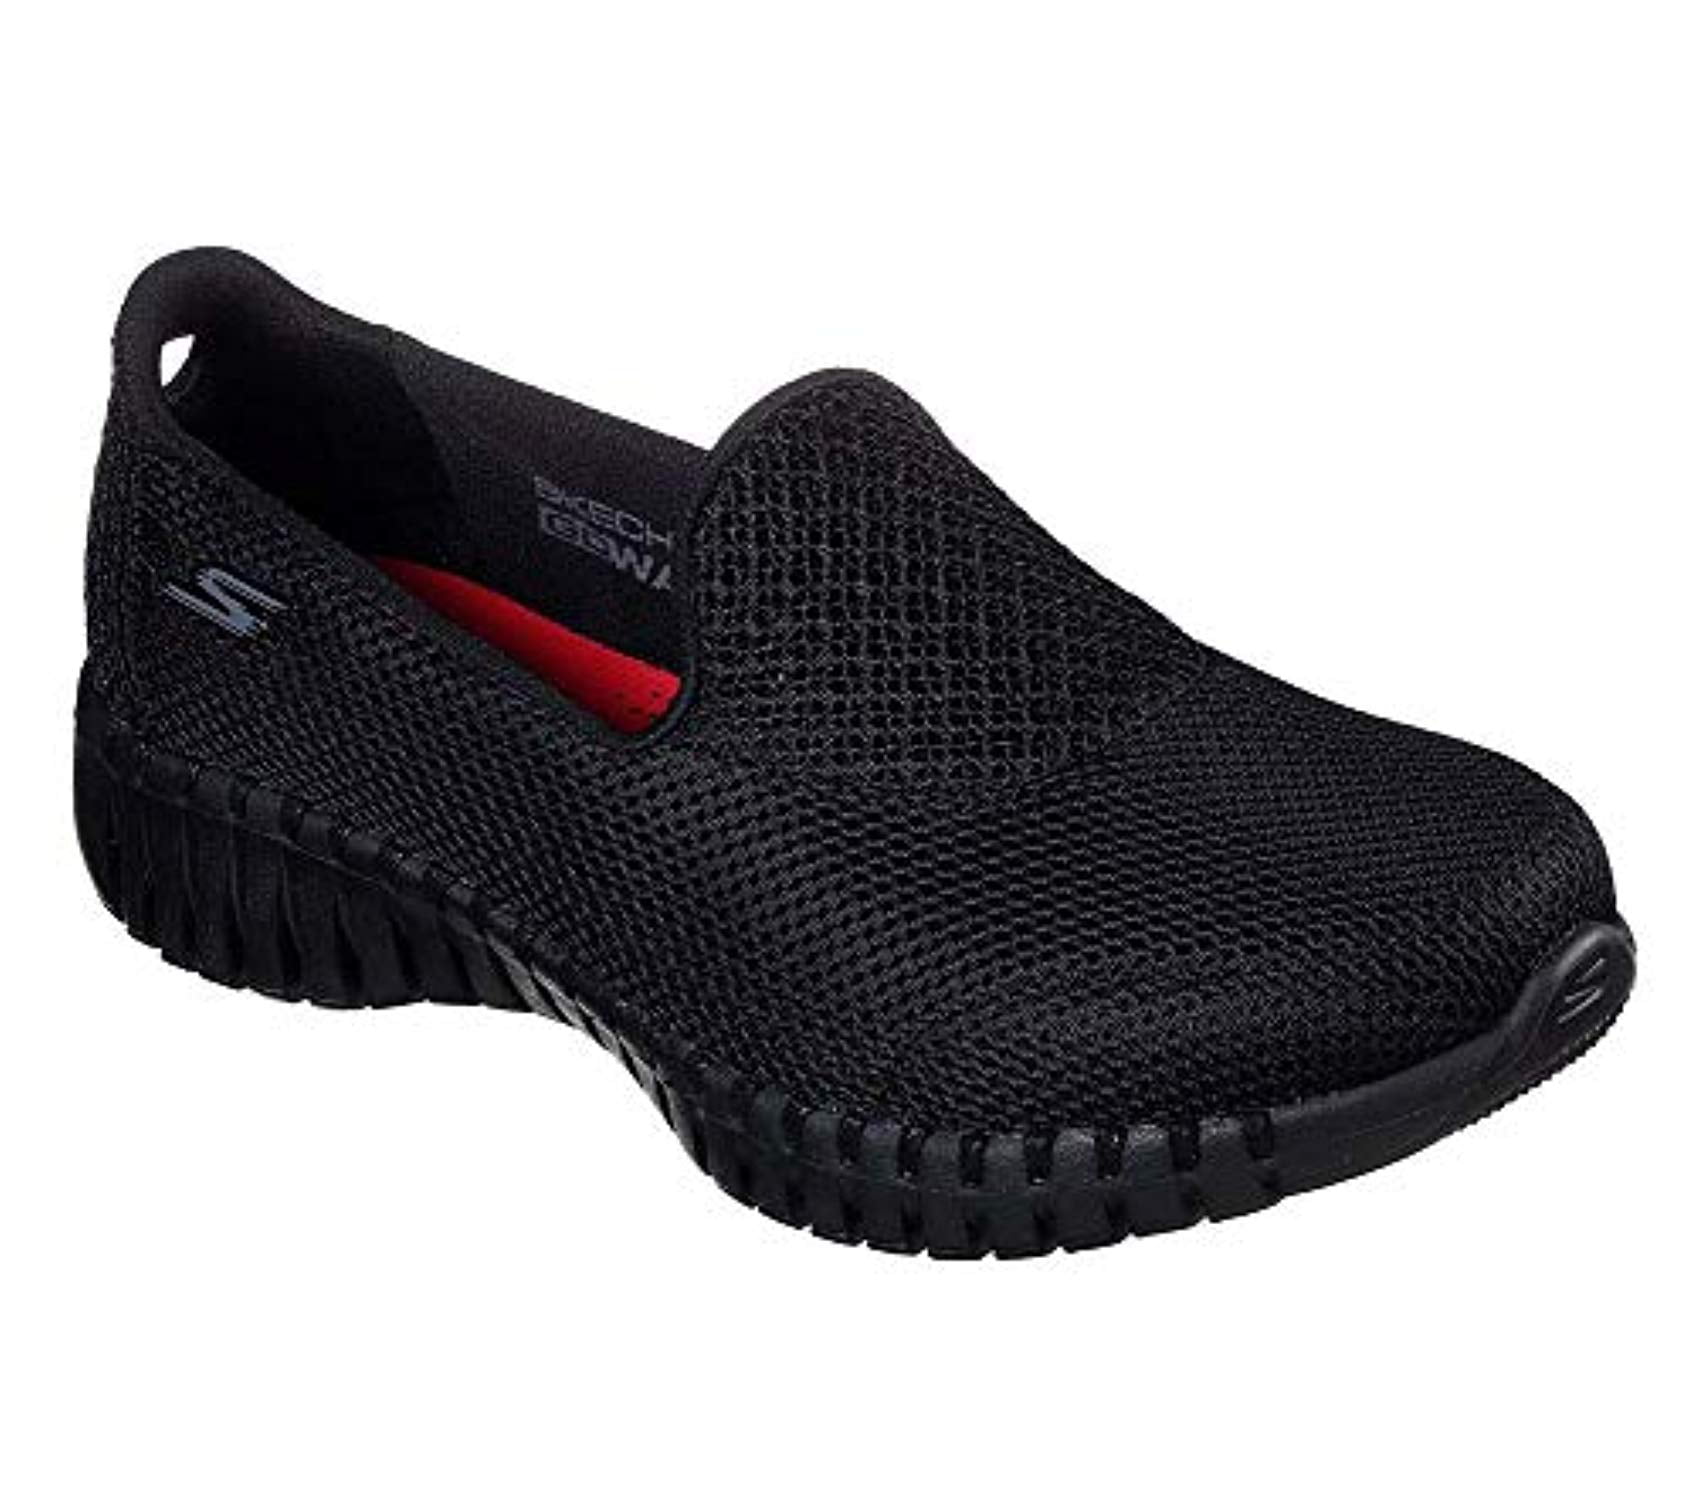 Skechers - Skechers Women's GO Walk Smart - 16700 Shoe, Black, 7 M US ...